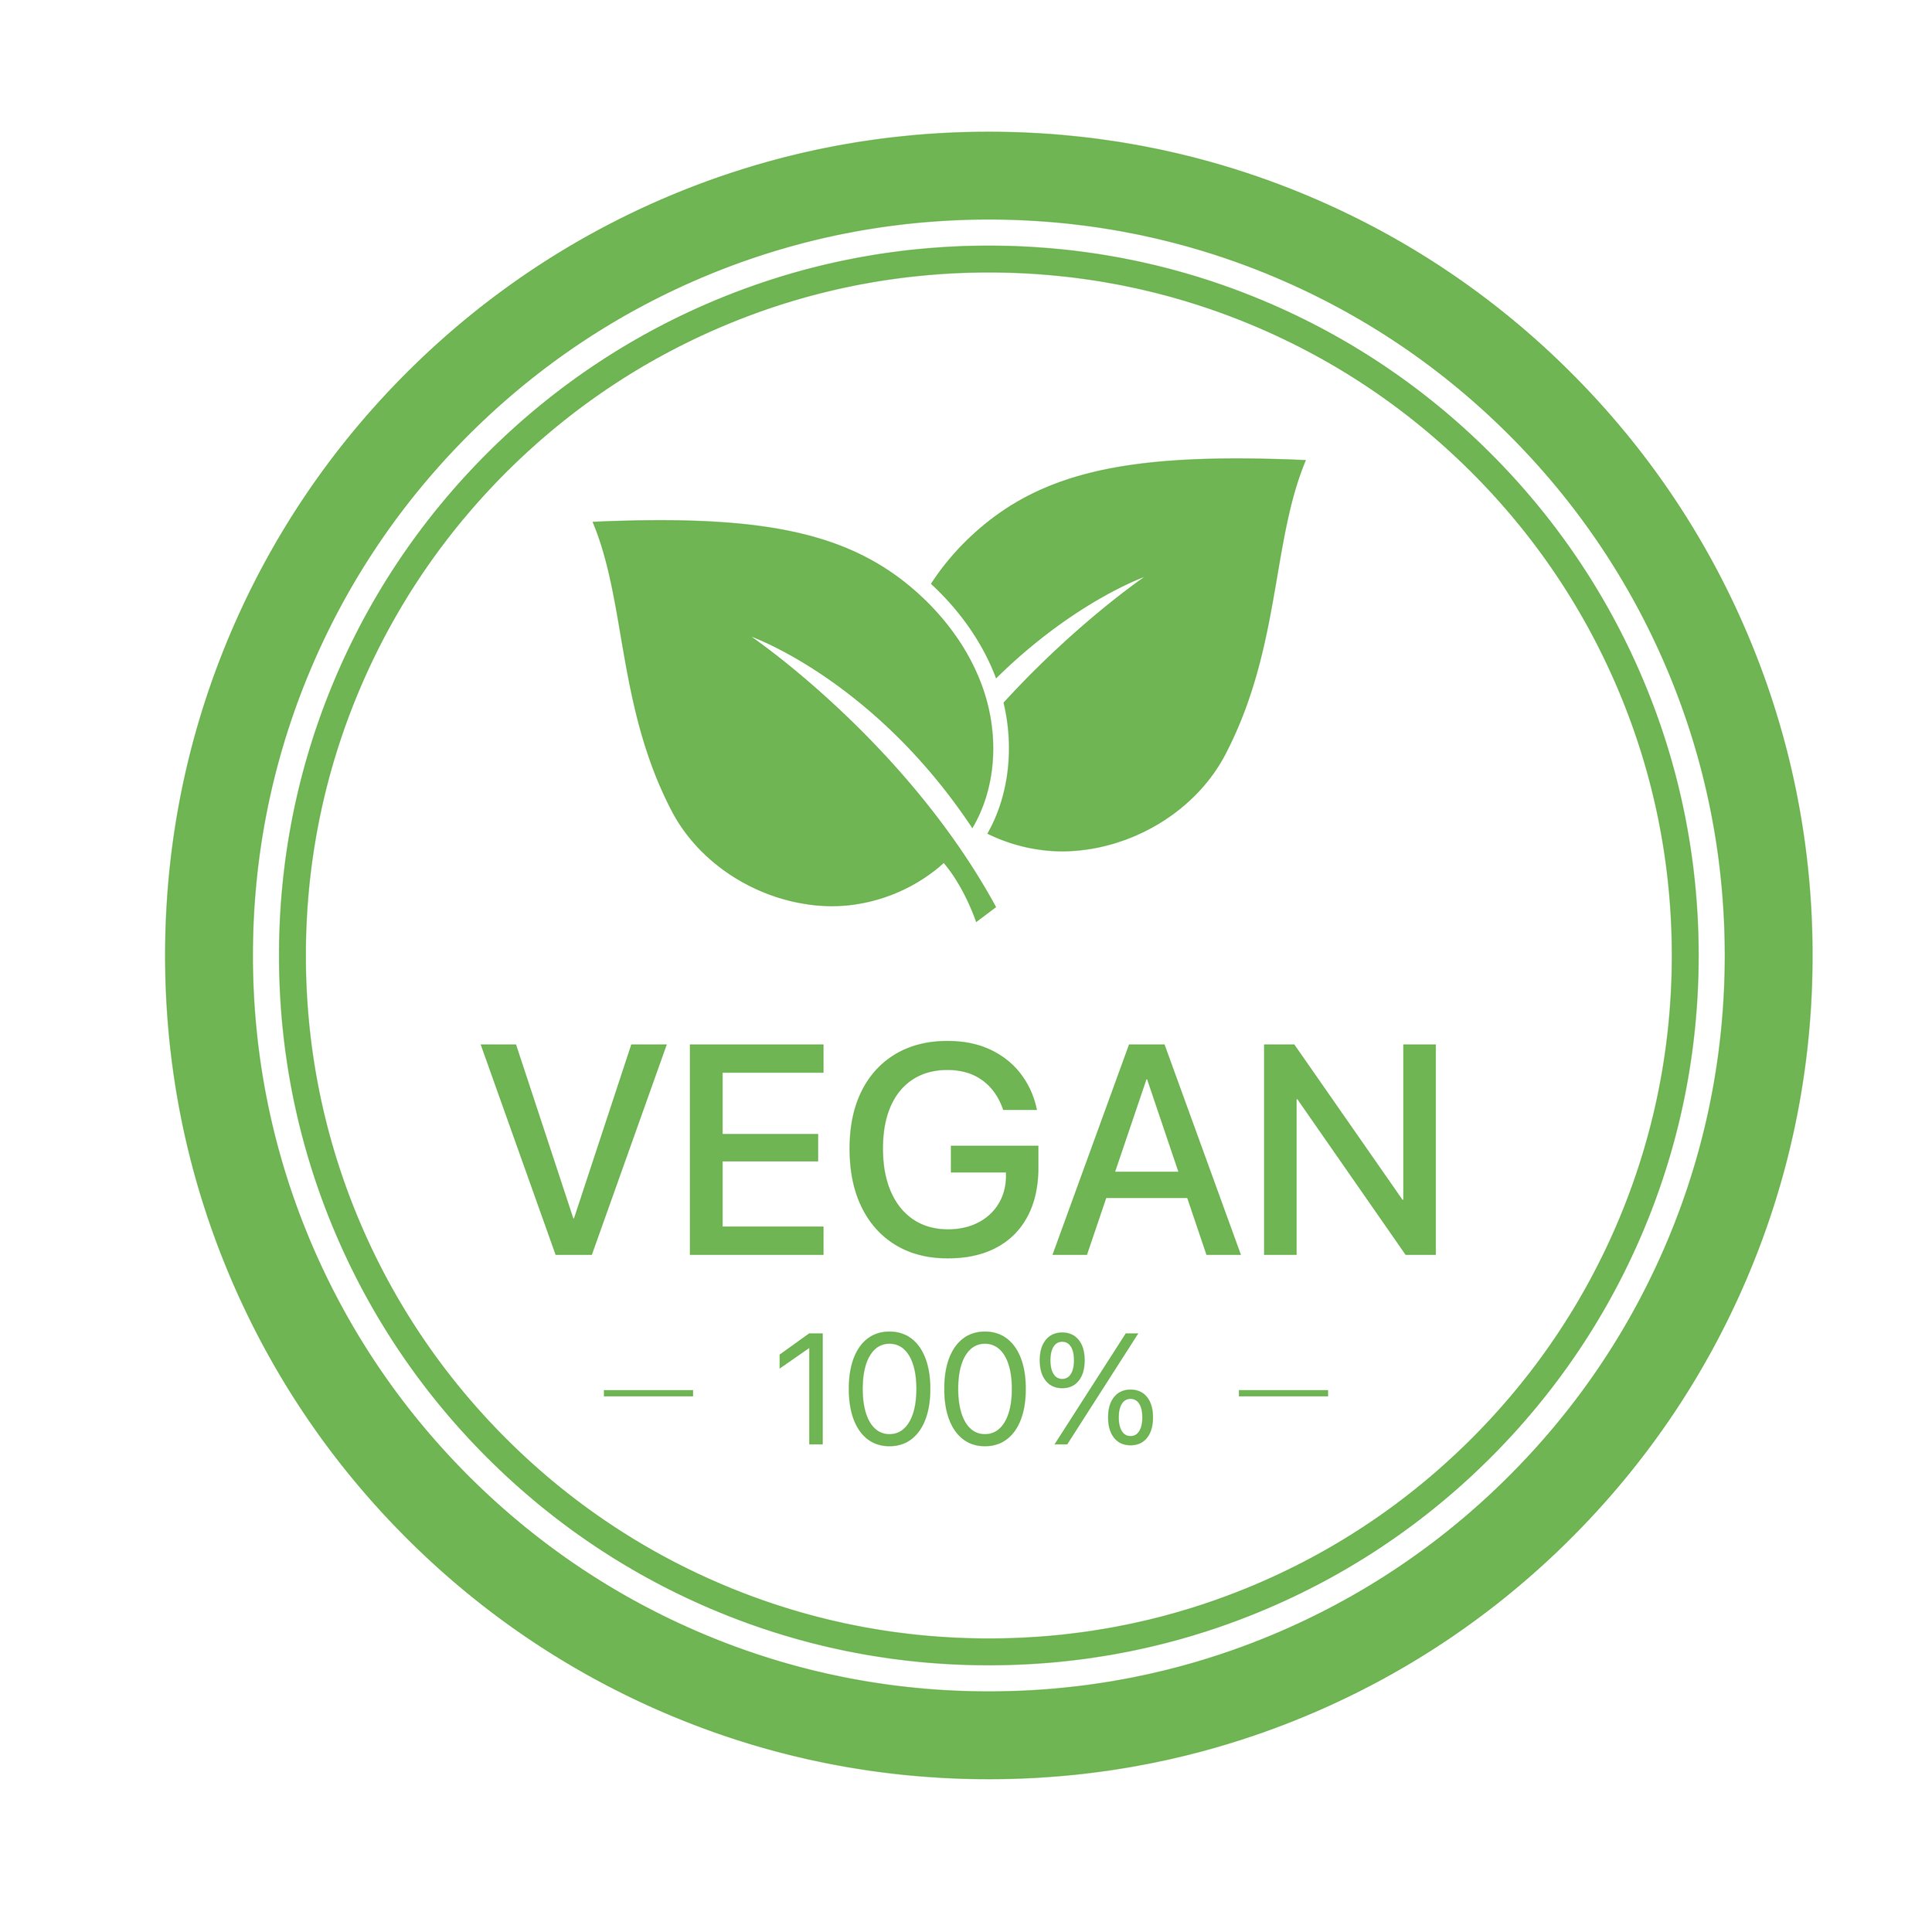 vegan_circle_green.jpg